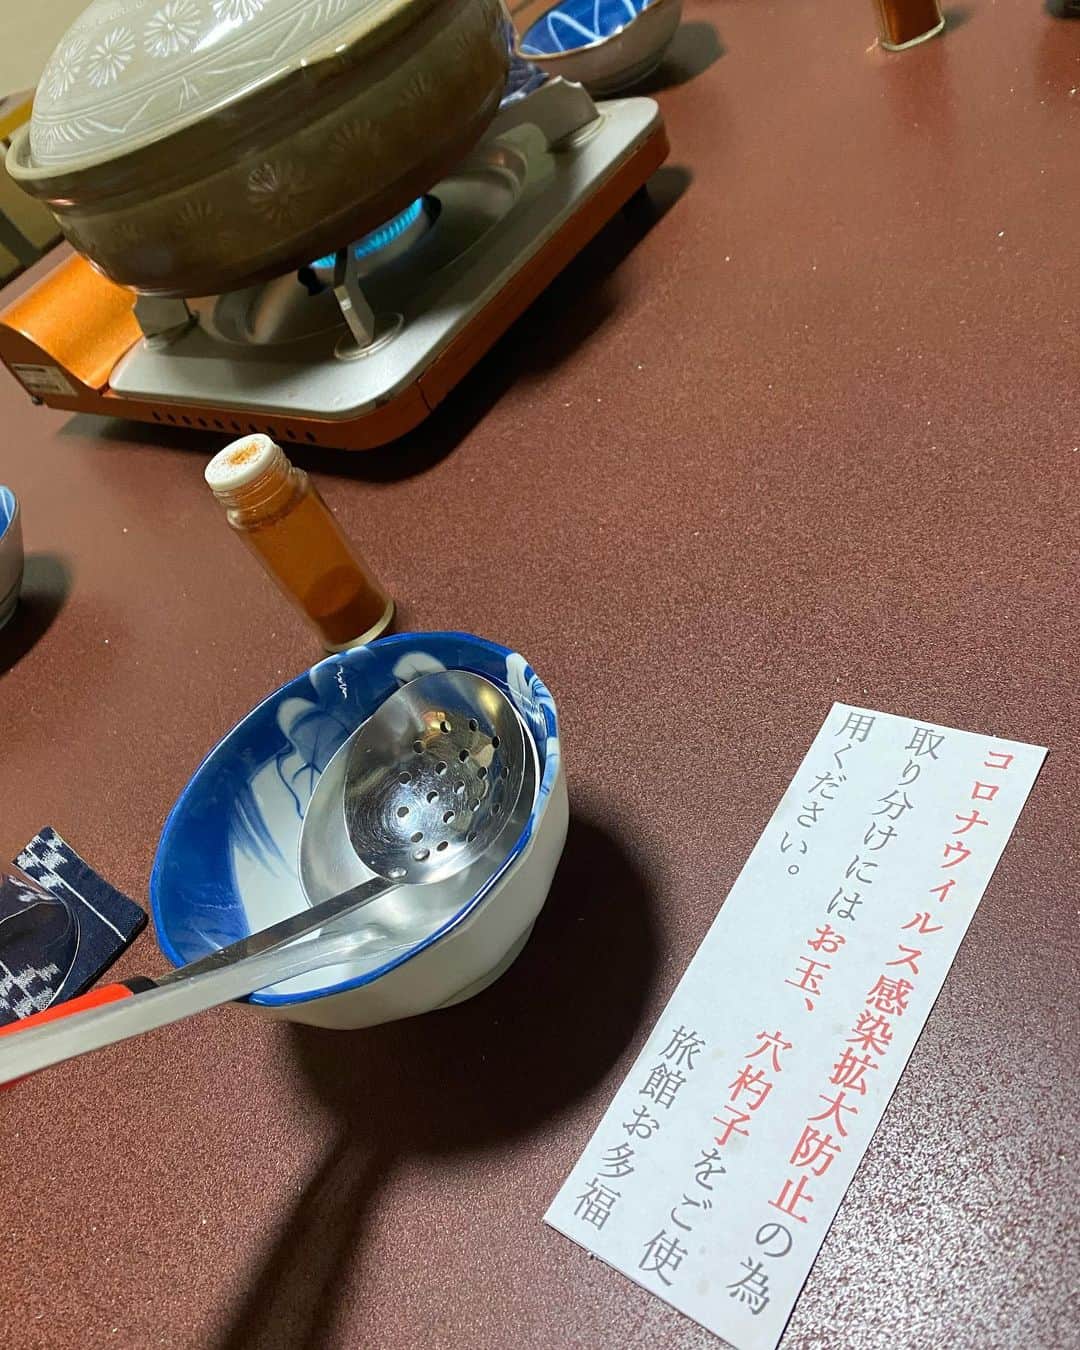 旅館 お多福のインスタグラム：「旅館お多福ではコロナ対策として以前から前日個室にてご案内をさせて頂いております。 入館時のアルコール消毒、検温にもご協力お願い致します。 お鍋の取り分けにお玉、穴杓子御用意させていただいておりますのでそちらをお使い下さい。 宜しくお願い致します。 #岡山 #津山 #okayama #tsuyama #旅館 #鍋 #雉鍋 #キジ鍋 #ケンケン鍋 #そずり鍋 #黒豚しゃぶしゃぶ #出汁しゃぶ #お多福 #旅館お多福 #旅館deご飯 #旅館de宴会 #旅館gaえんじゃ #城下町 #津山城 #城下の宿 #コロナ対策 #全室個室」